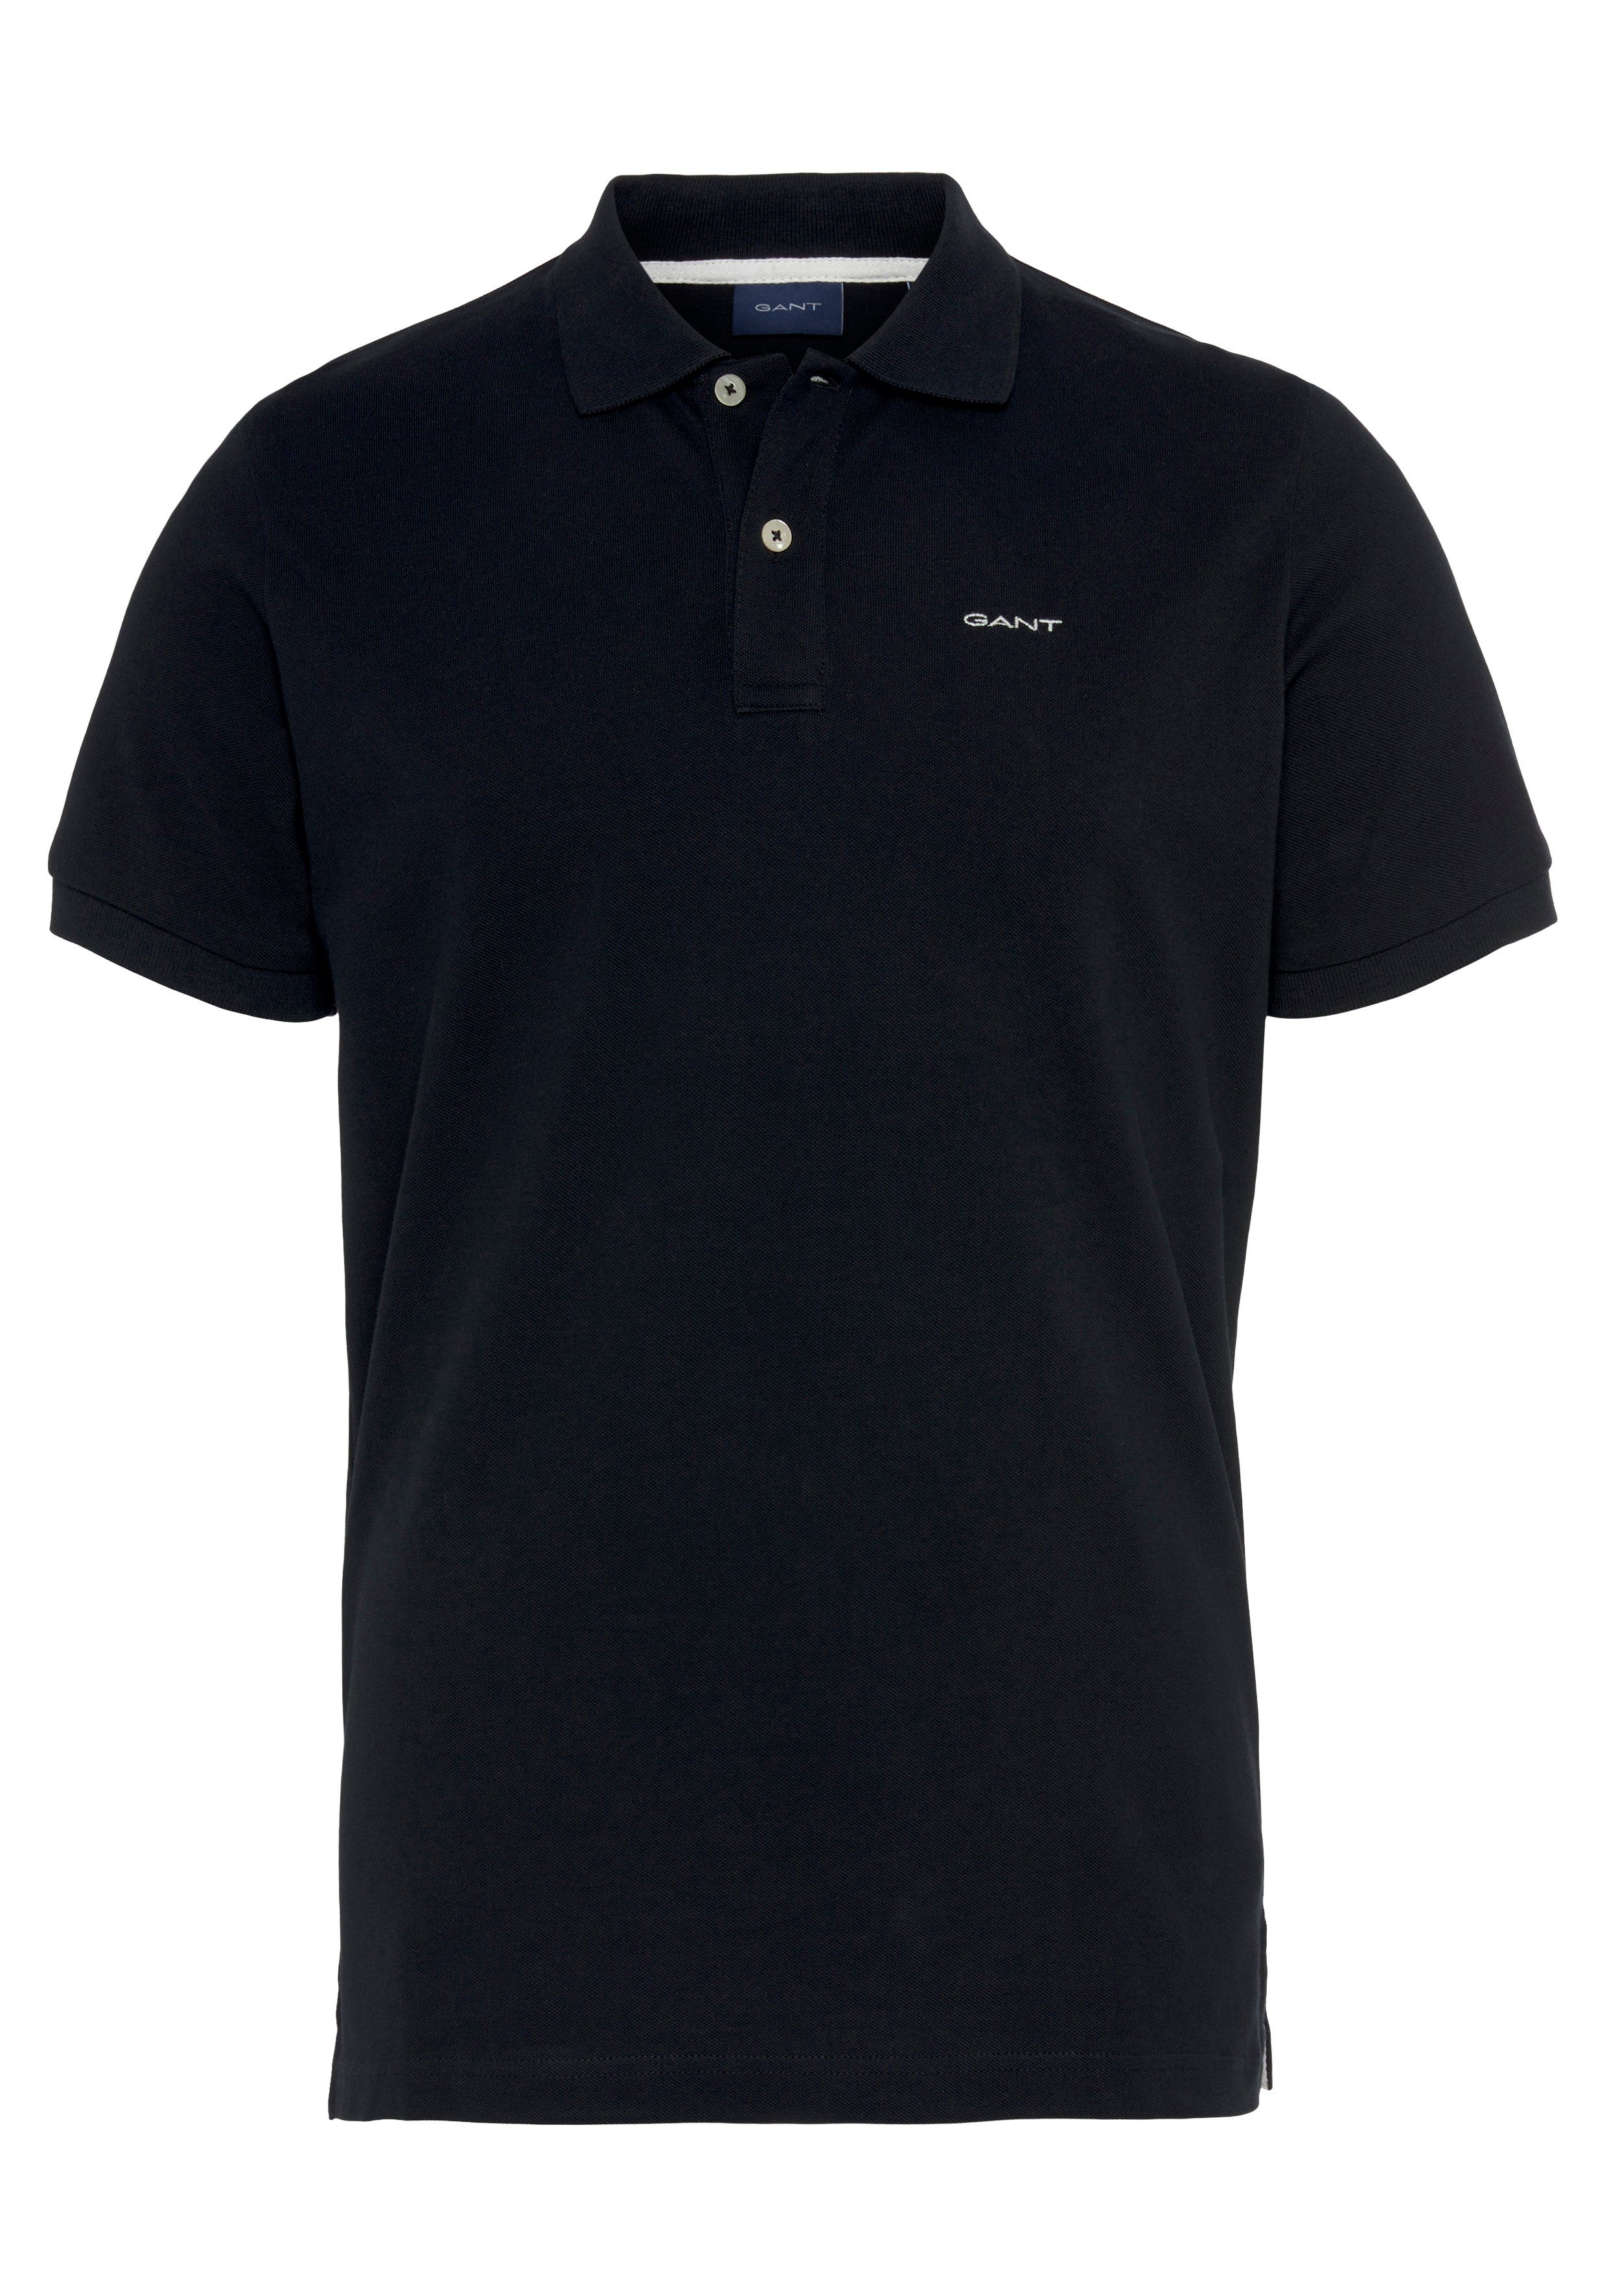 Poloshirt RUGGER Qualität schwarz Casual, PIQUE Regular Premium Gant MD. Piqué-Polo Smart Shirt, KA Fit,